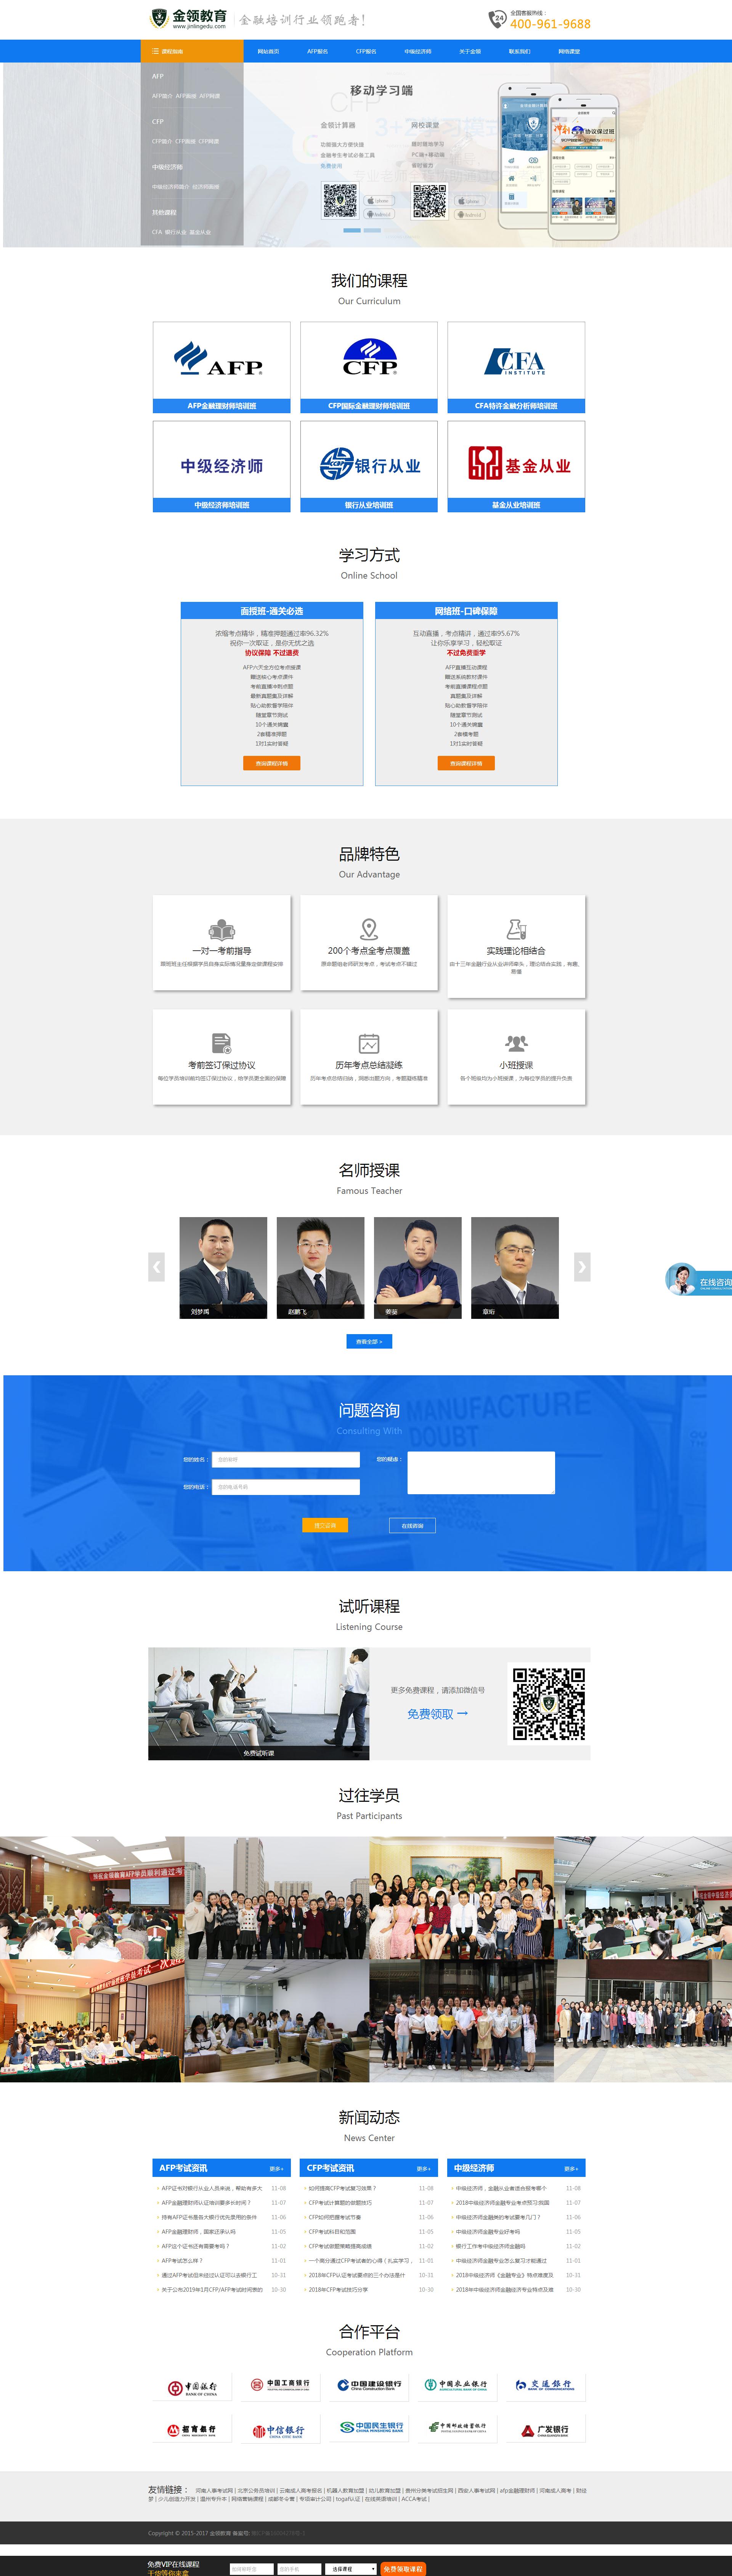 郑州网站建设教育培训案例